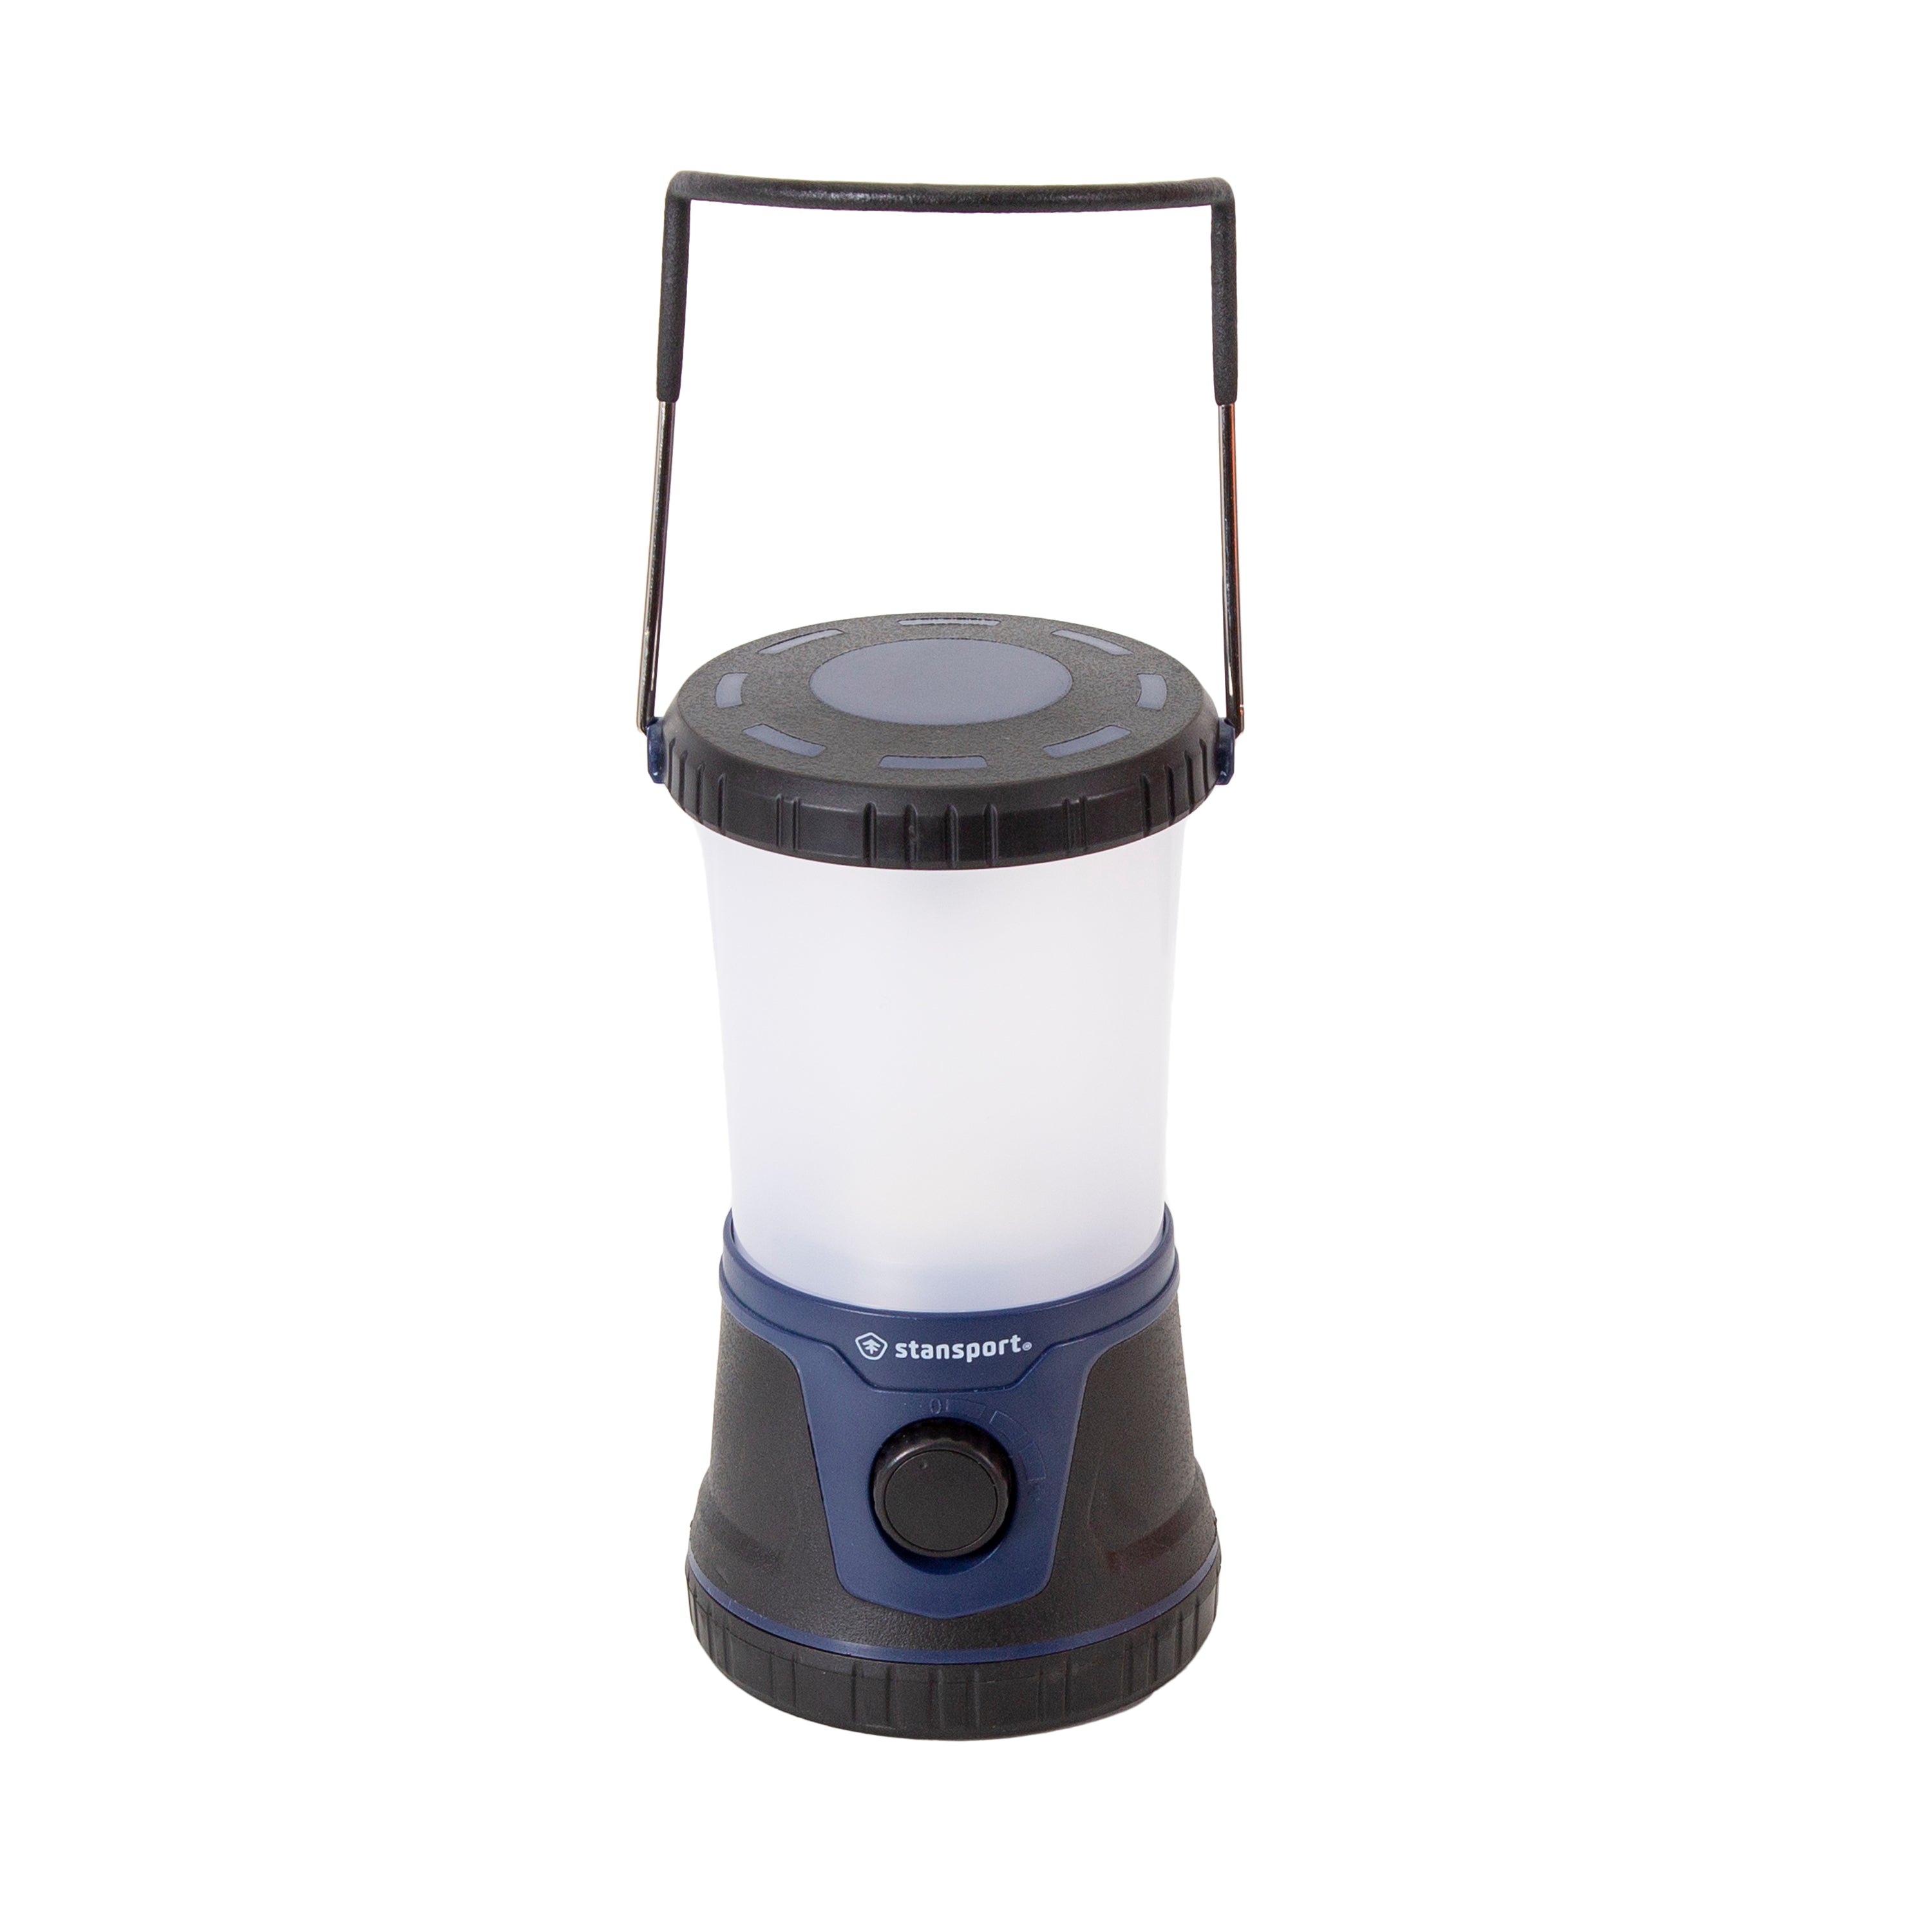 1500 Lumen Rechargeable Lantern W/ Smd Bulbs – Built In Batt